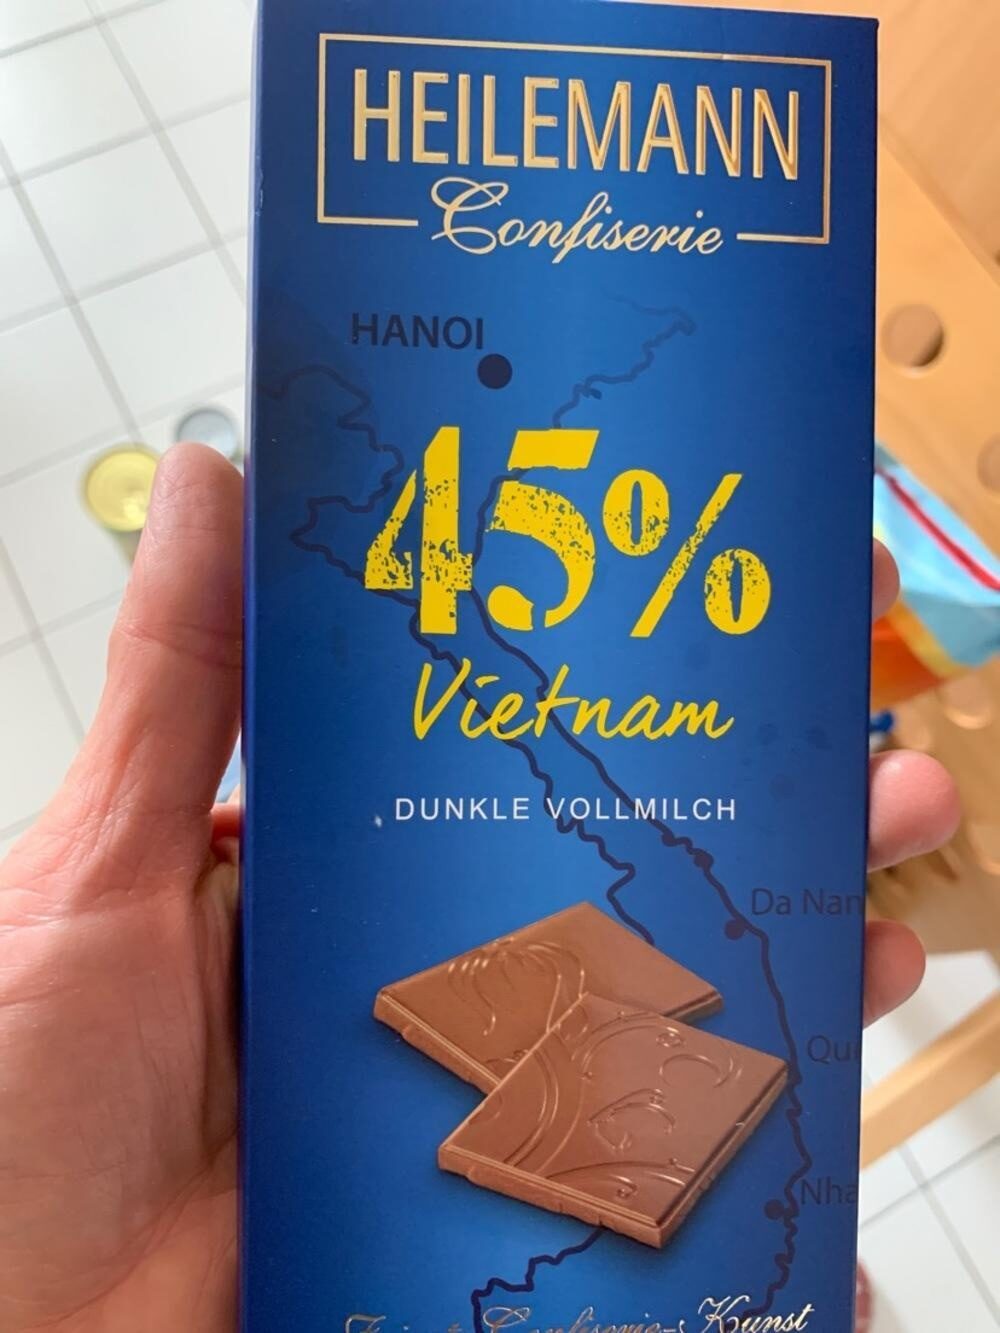 Schokolade - Product - de